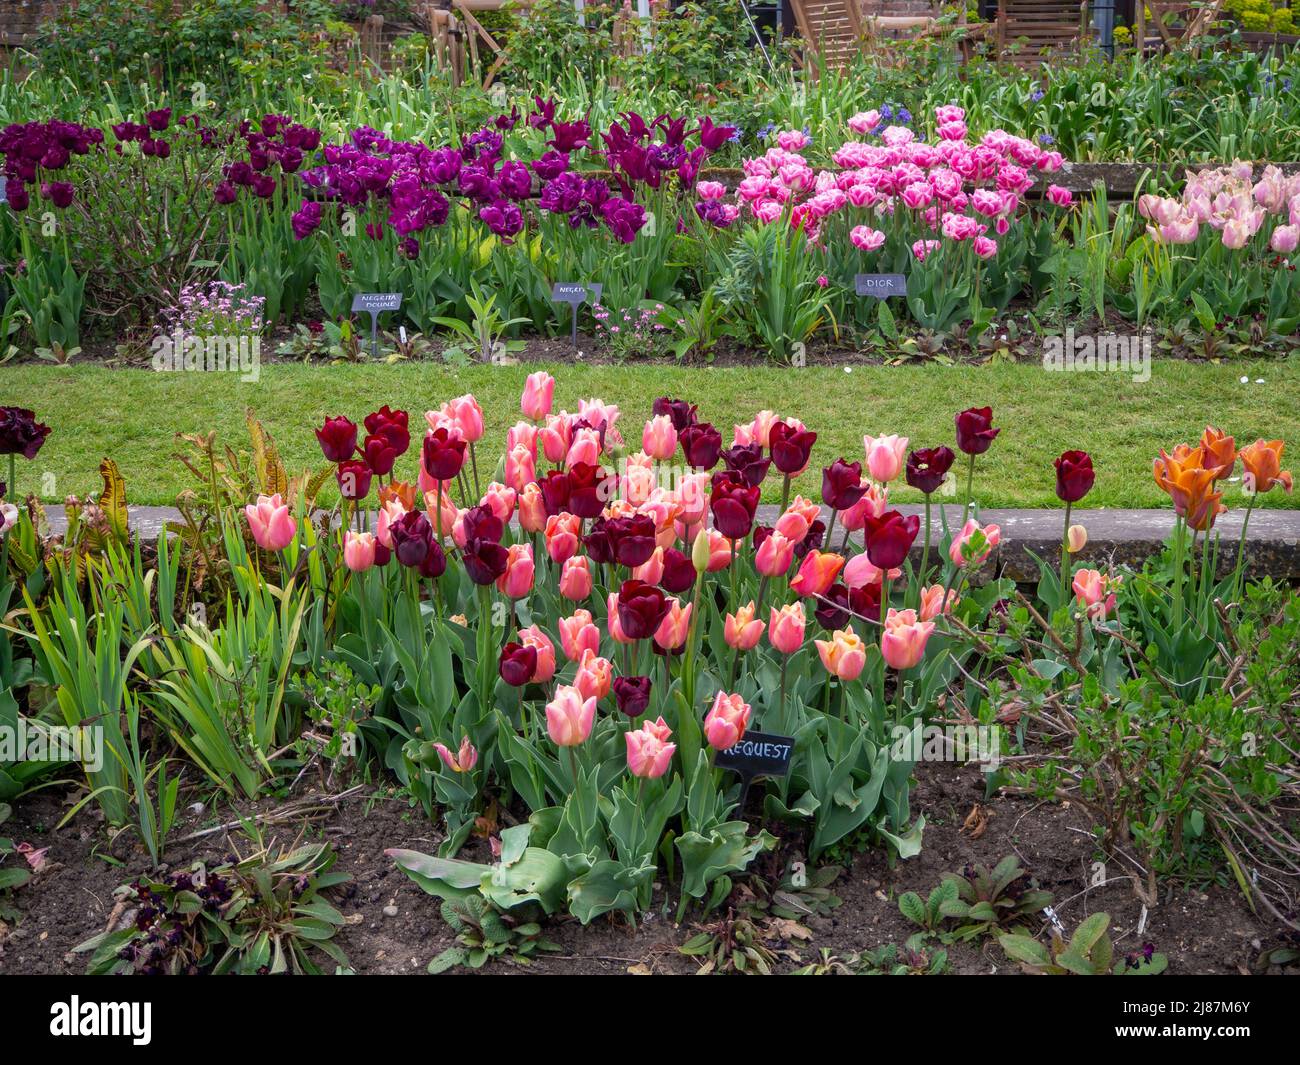 Chenies Manor Garden.le jardin en contrebas avec des couches colorées de variétés de tulipes.Tulipa 'Request', Tulipa 'dior', Tulipa 'Salmon Prince'. Banque D'Images